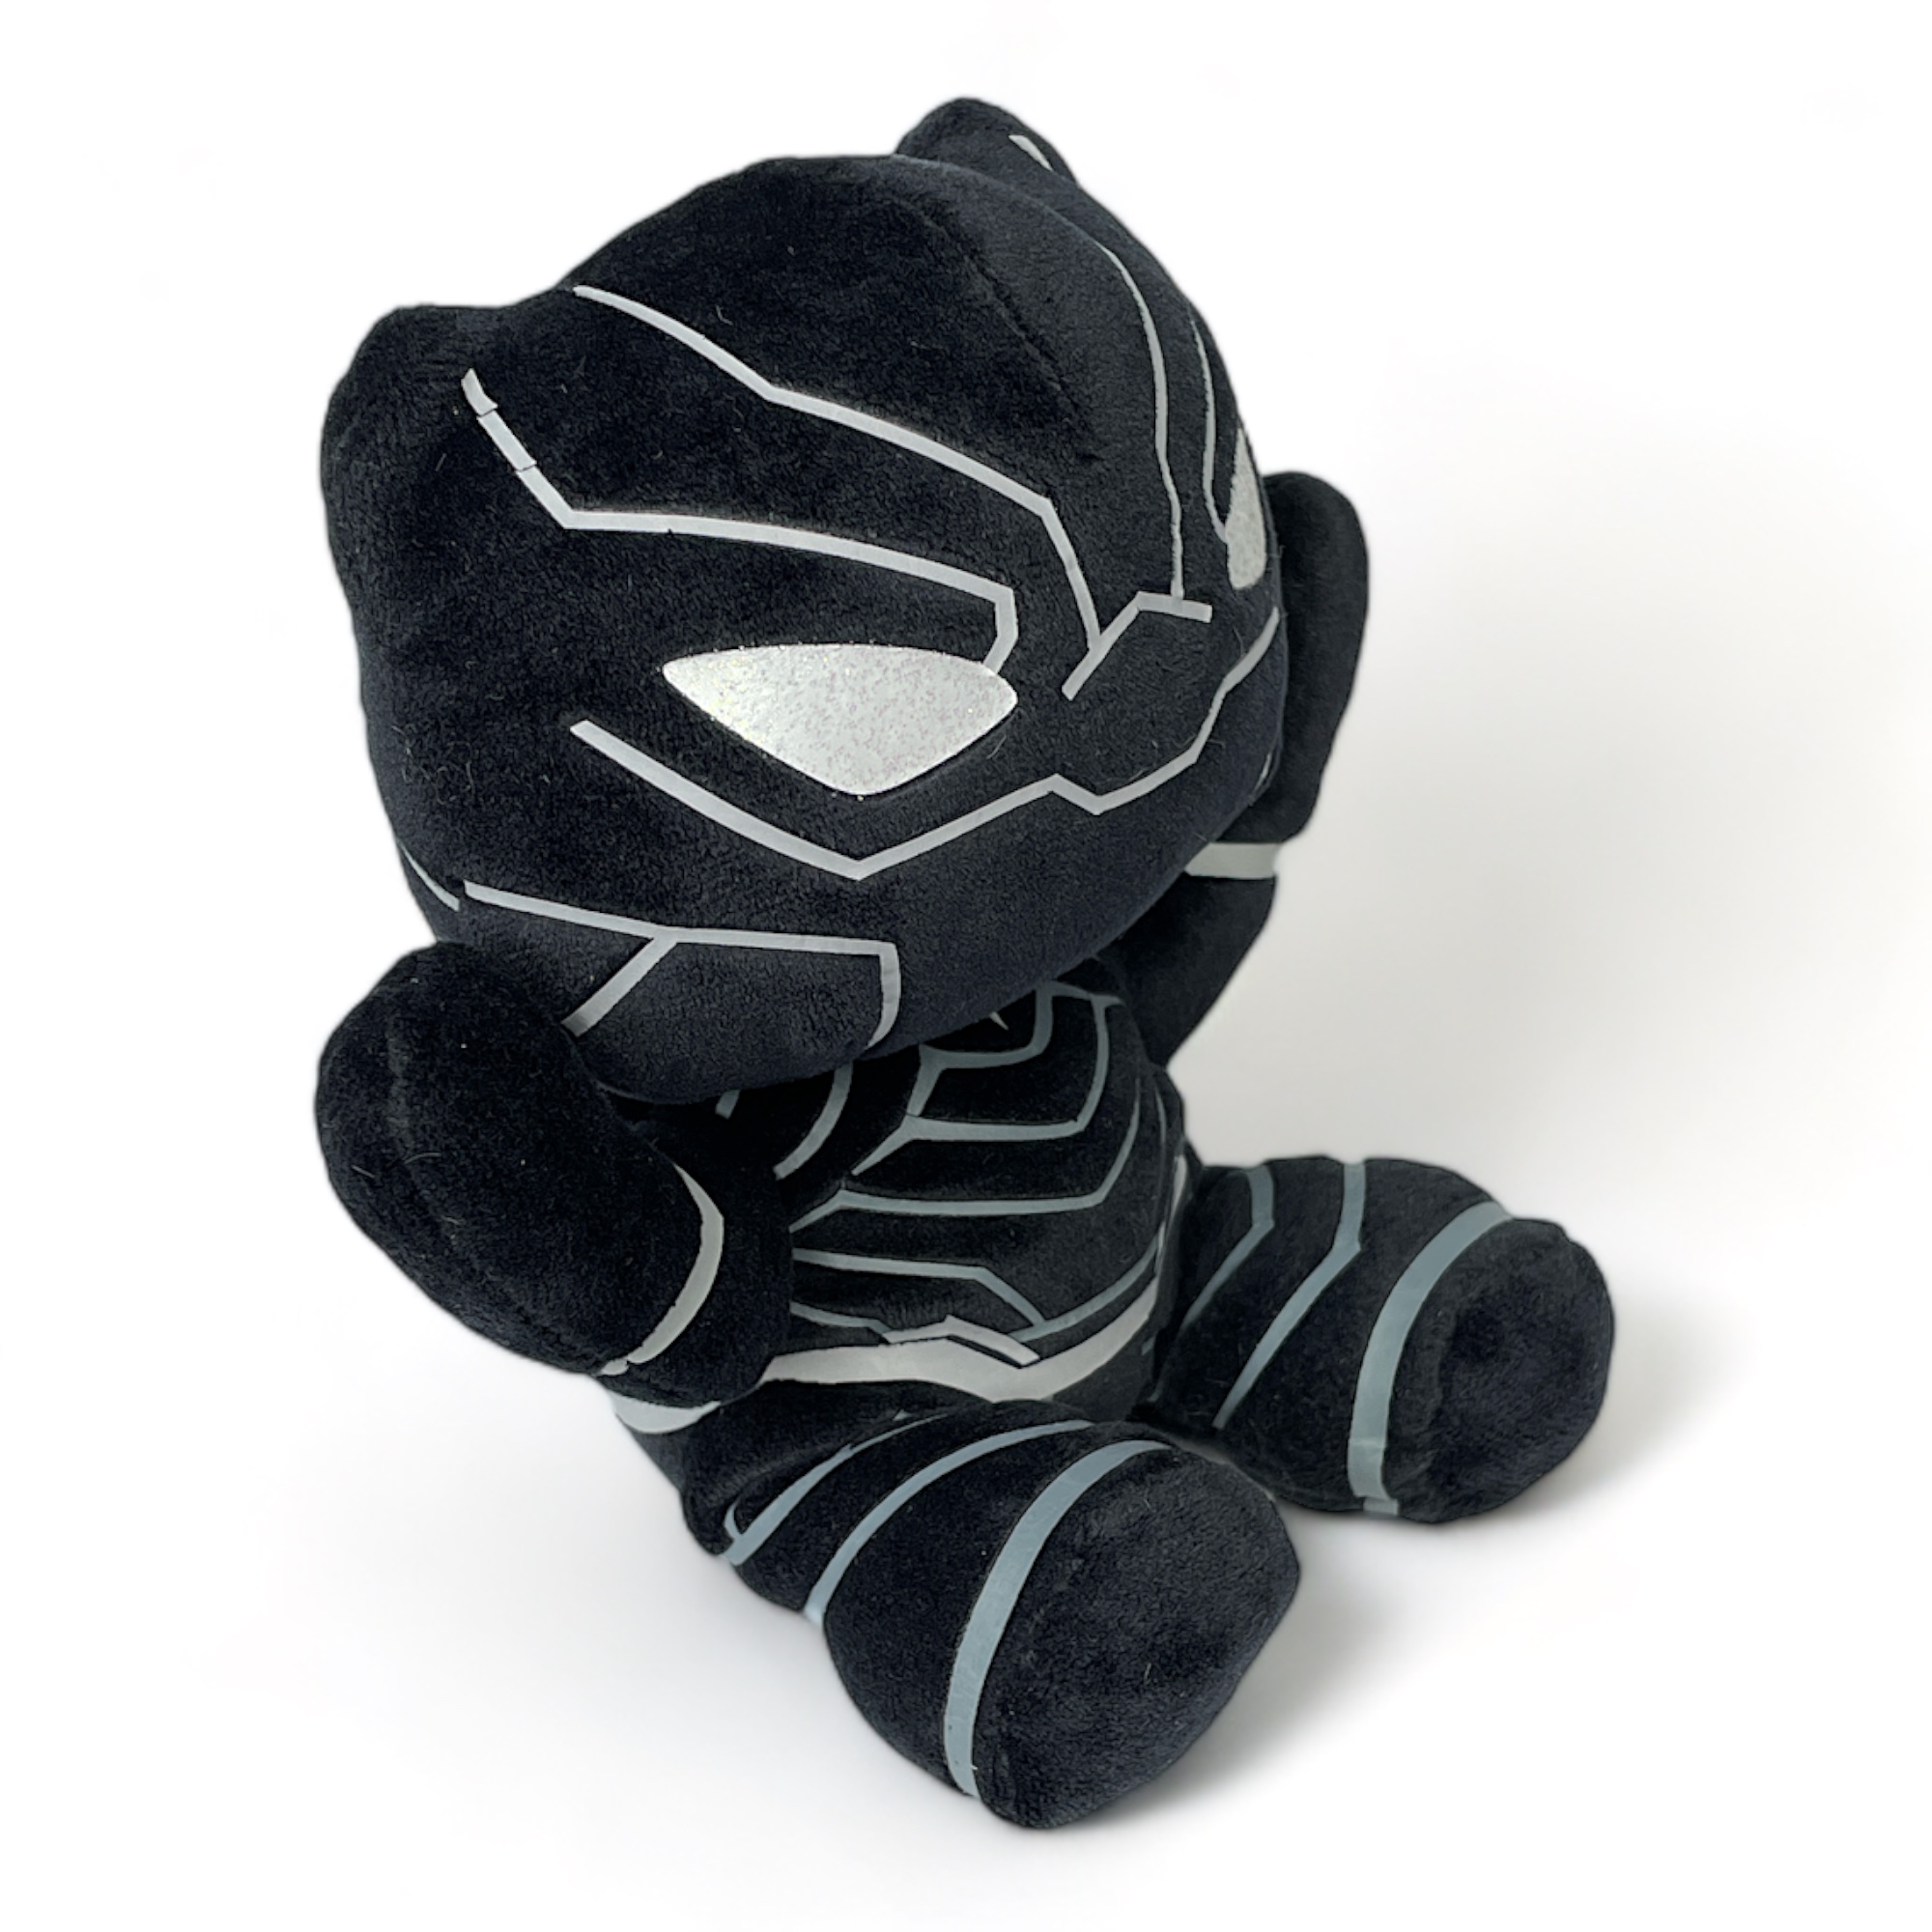 Black Panther Plüschfigur (18 cm) - Marvel